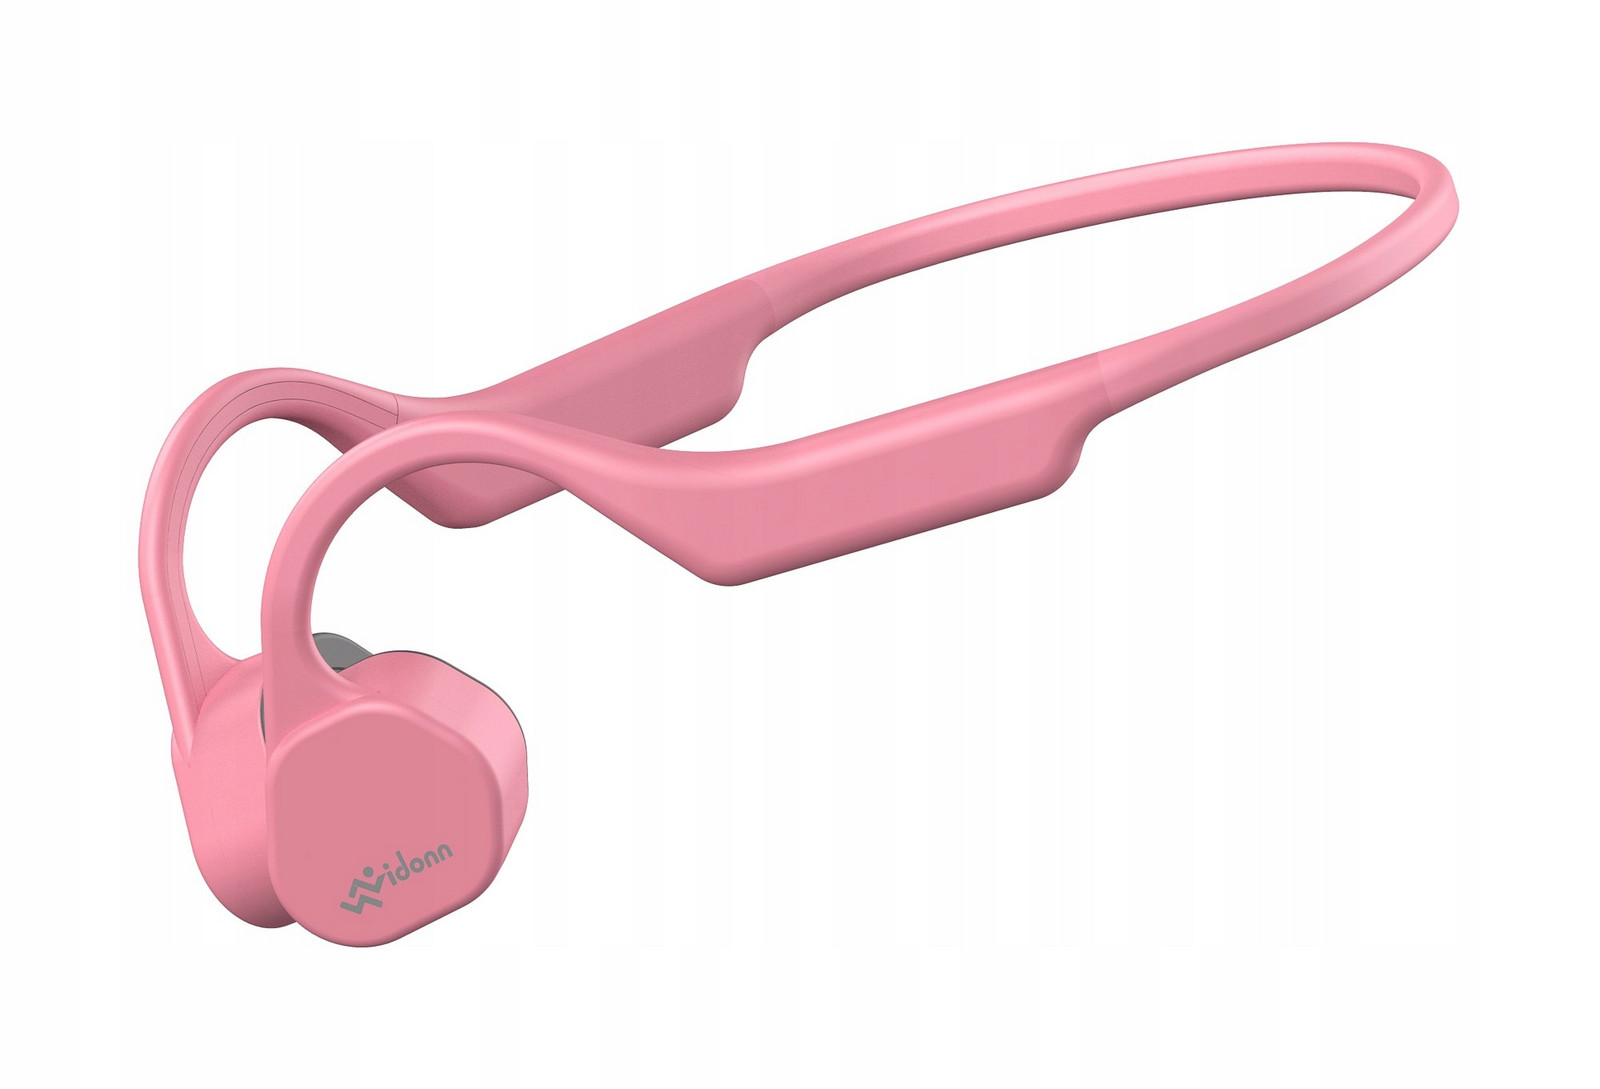 Bezdrátová sluchátka s technologií kostního vedení Vidonn F3 Pink